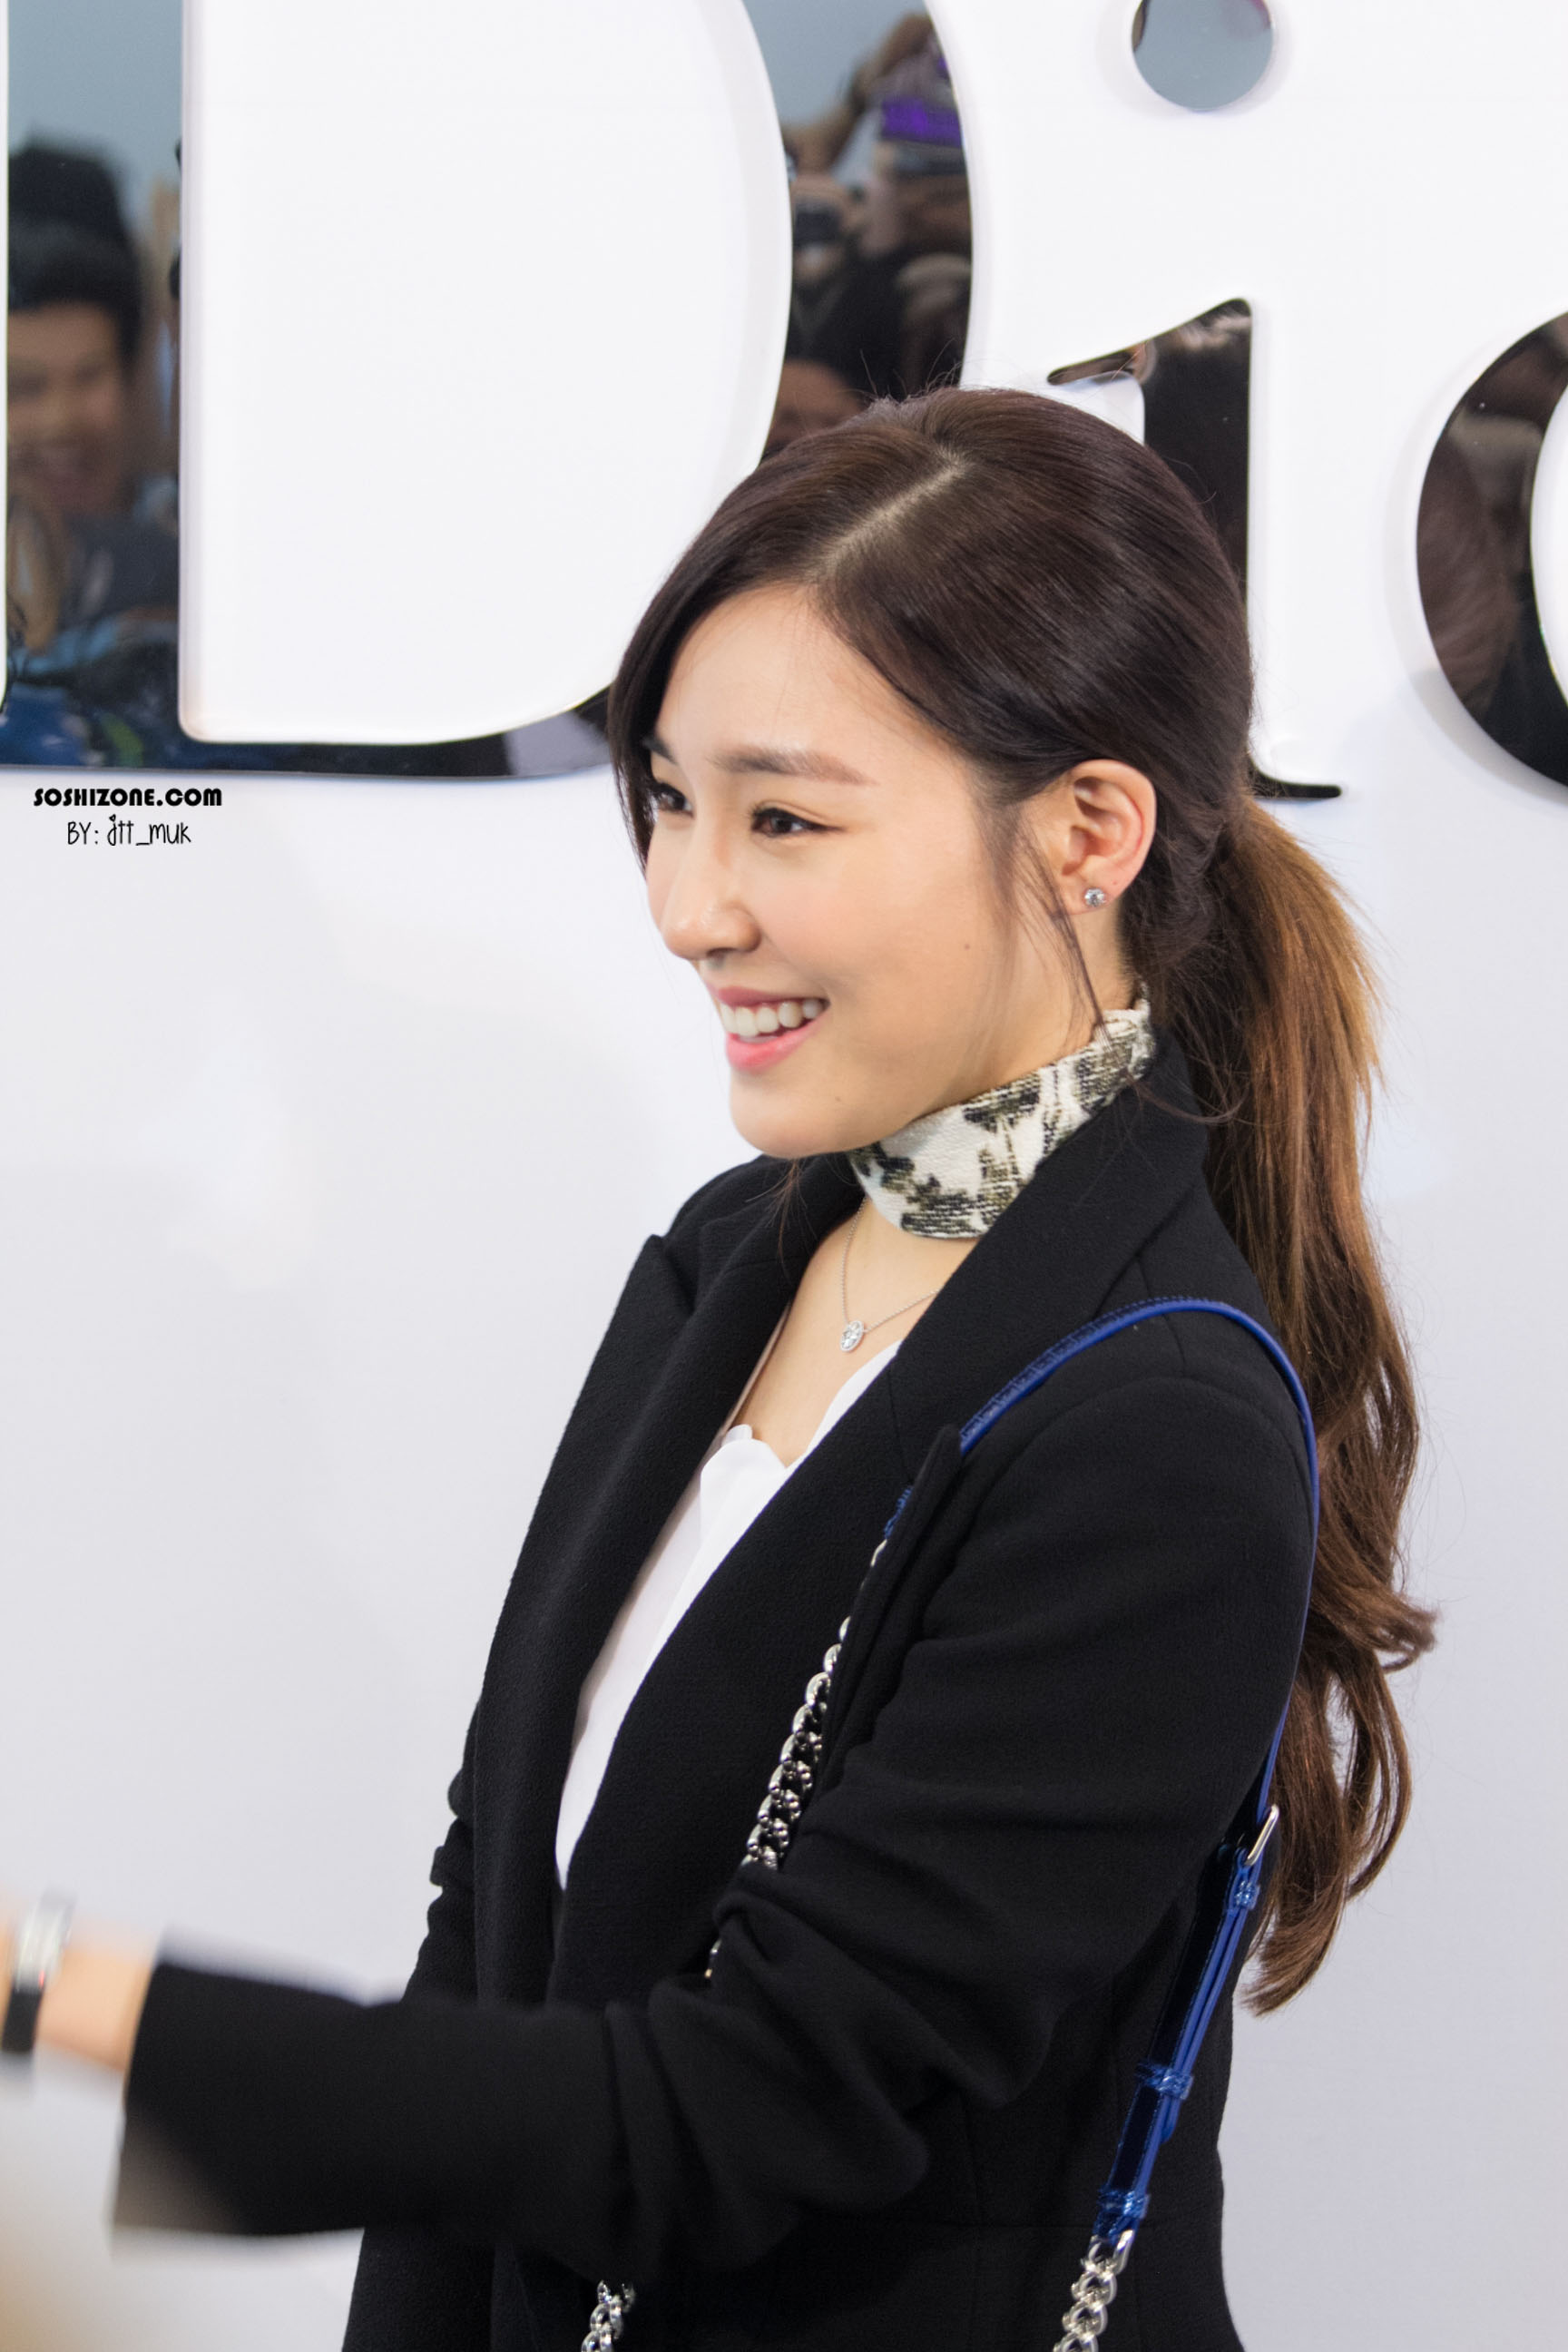 [PIC][17-02-2016]Tiffany khởi hành đi Thái Lan để tham dự sự kiện khai trương chi nhánh của thương hiệu "Christian Dior" vào hôm nay - Page 14 254CEF355728D4572C30D4